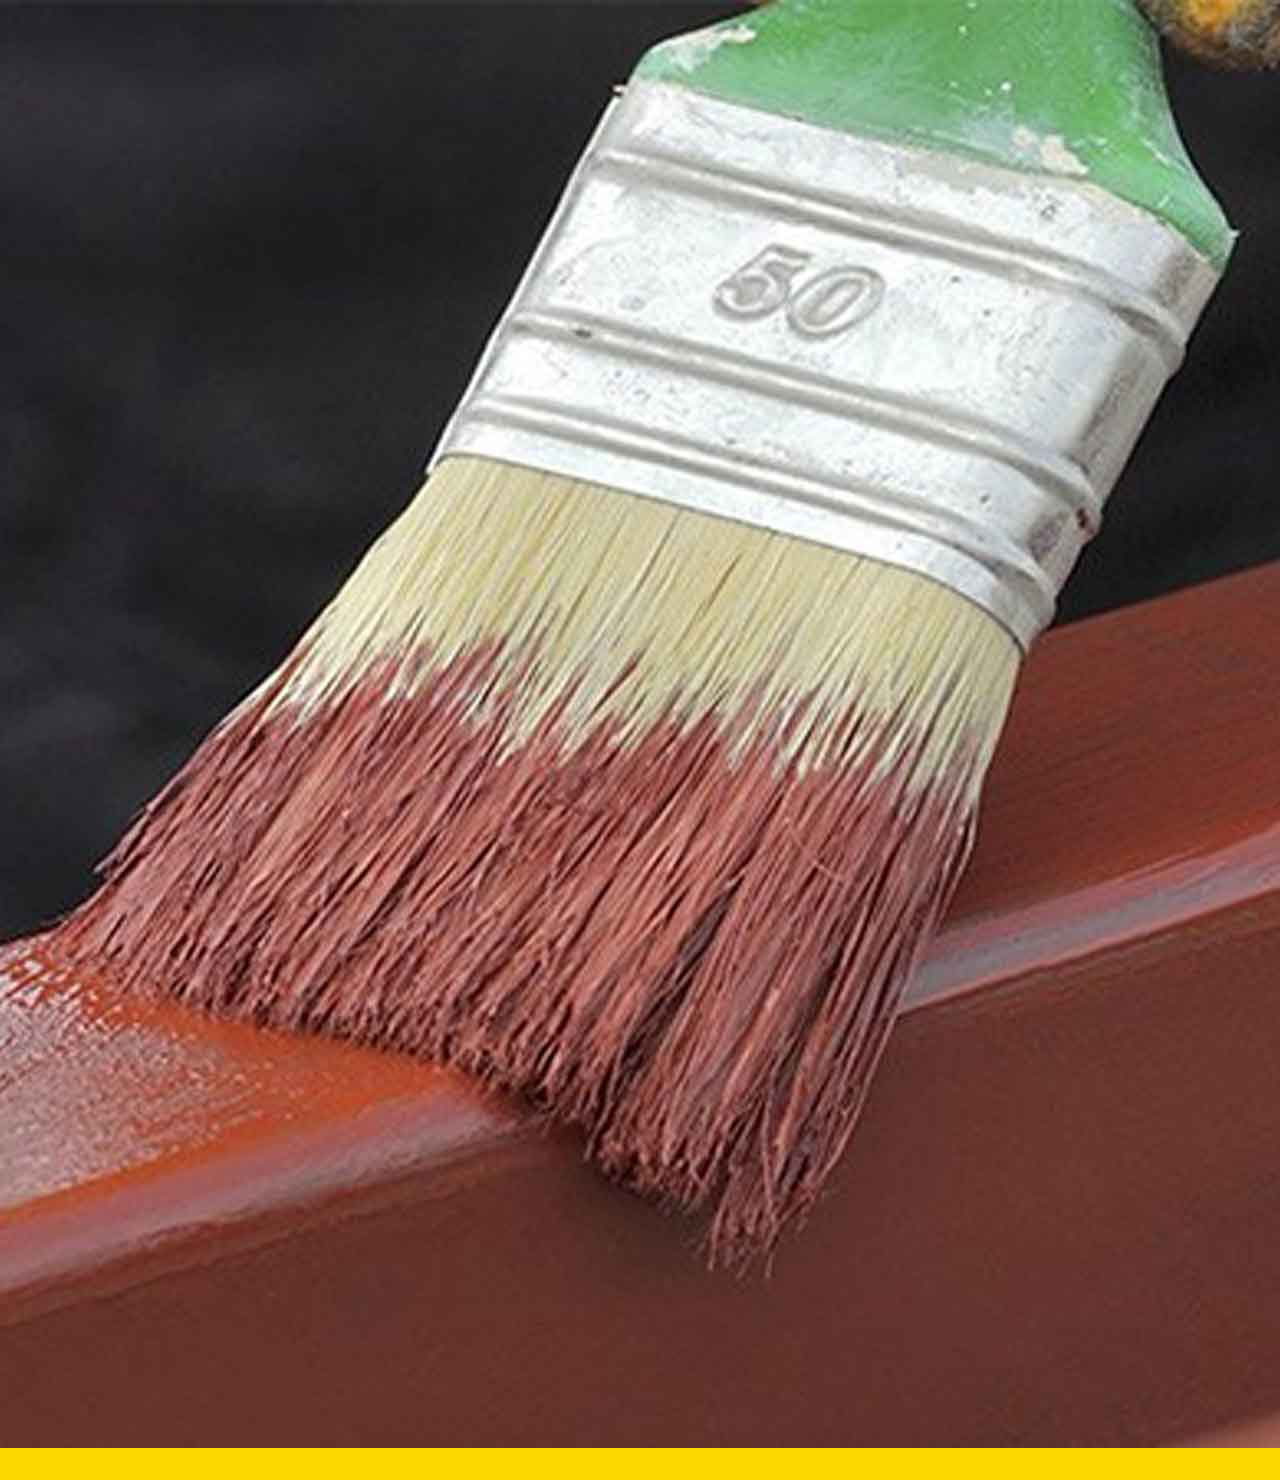 Pintura para rejas: Cómo preparar, pintar y proteger en un solo